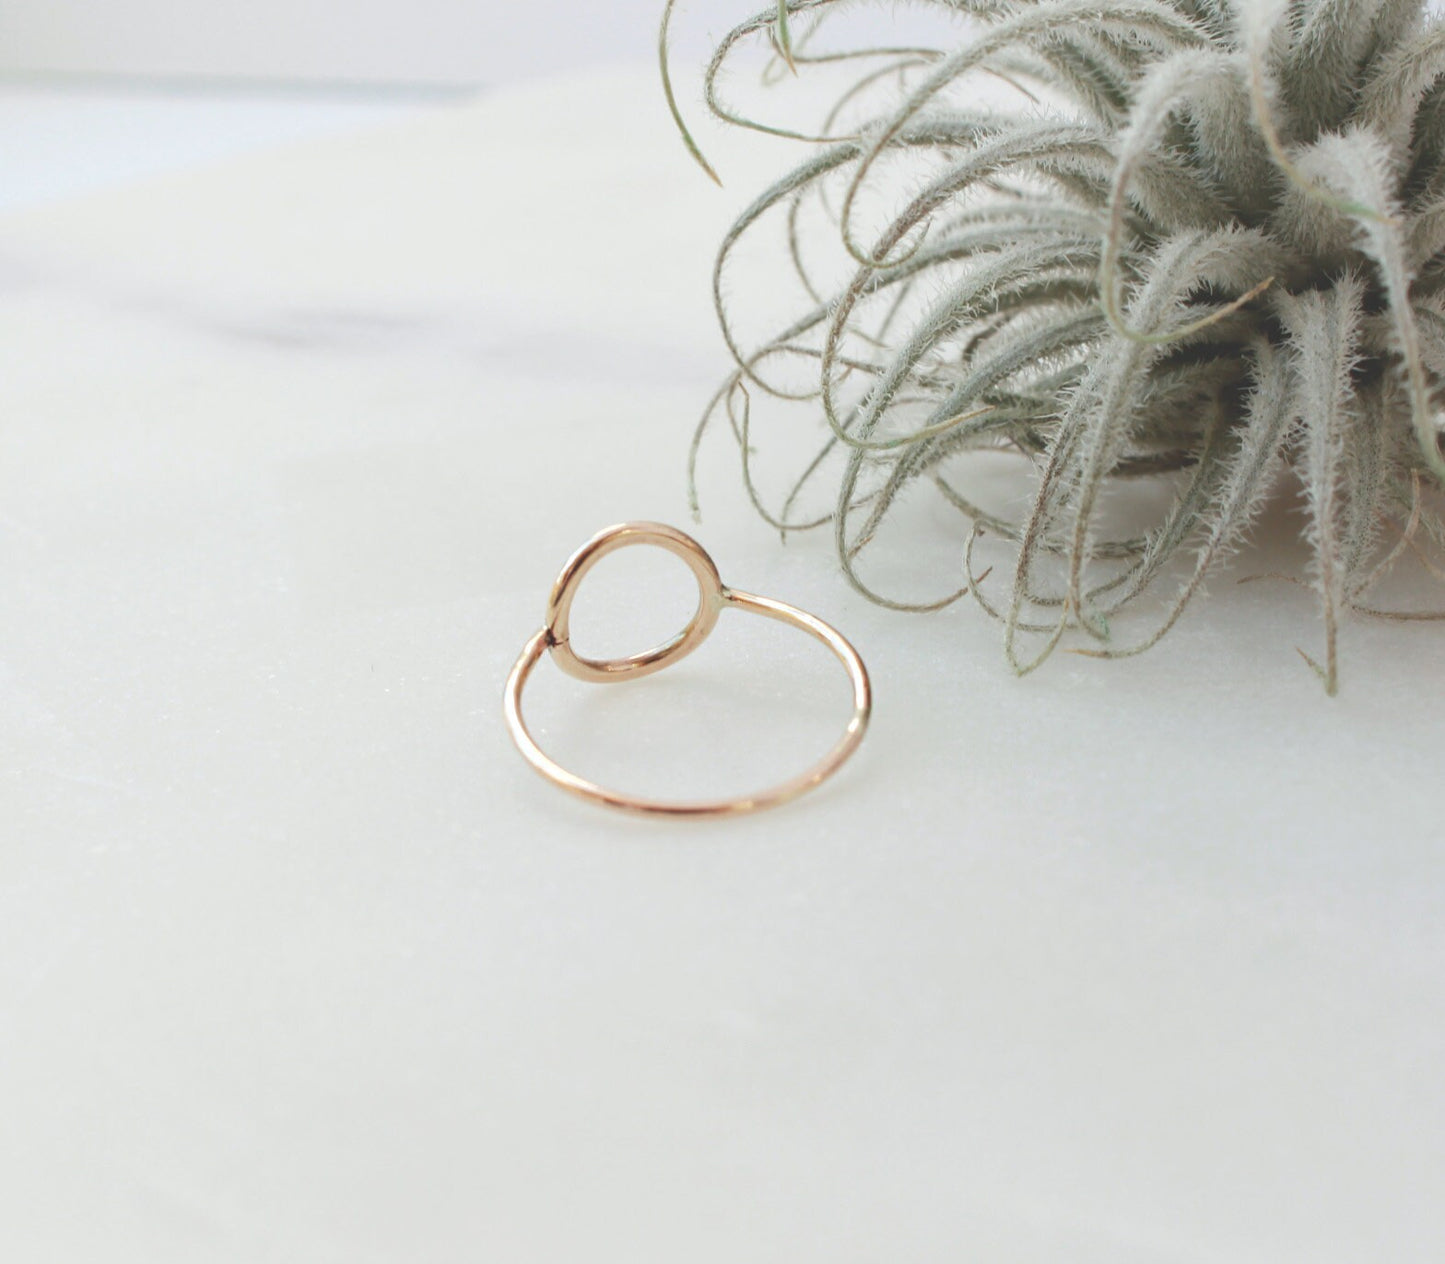 Gold Circle Ring - 14K Gold Filled, 10mm O Ring